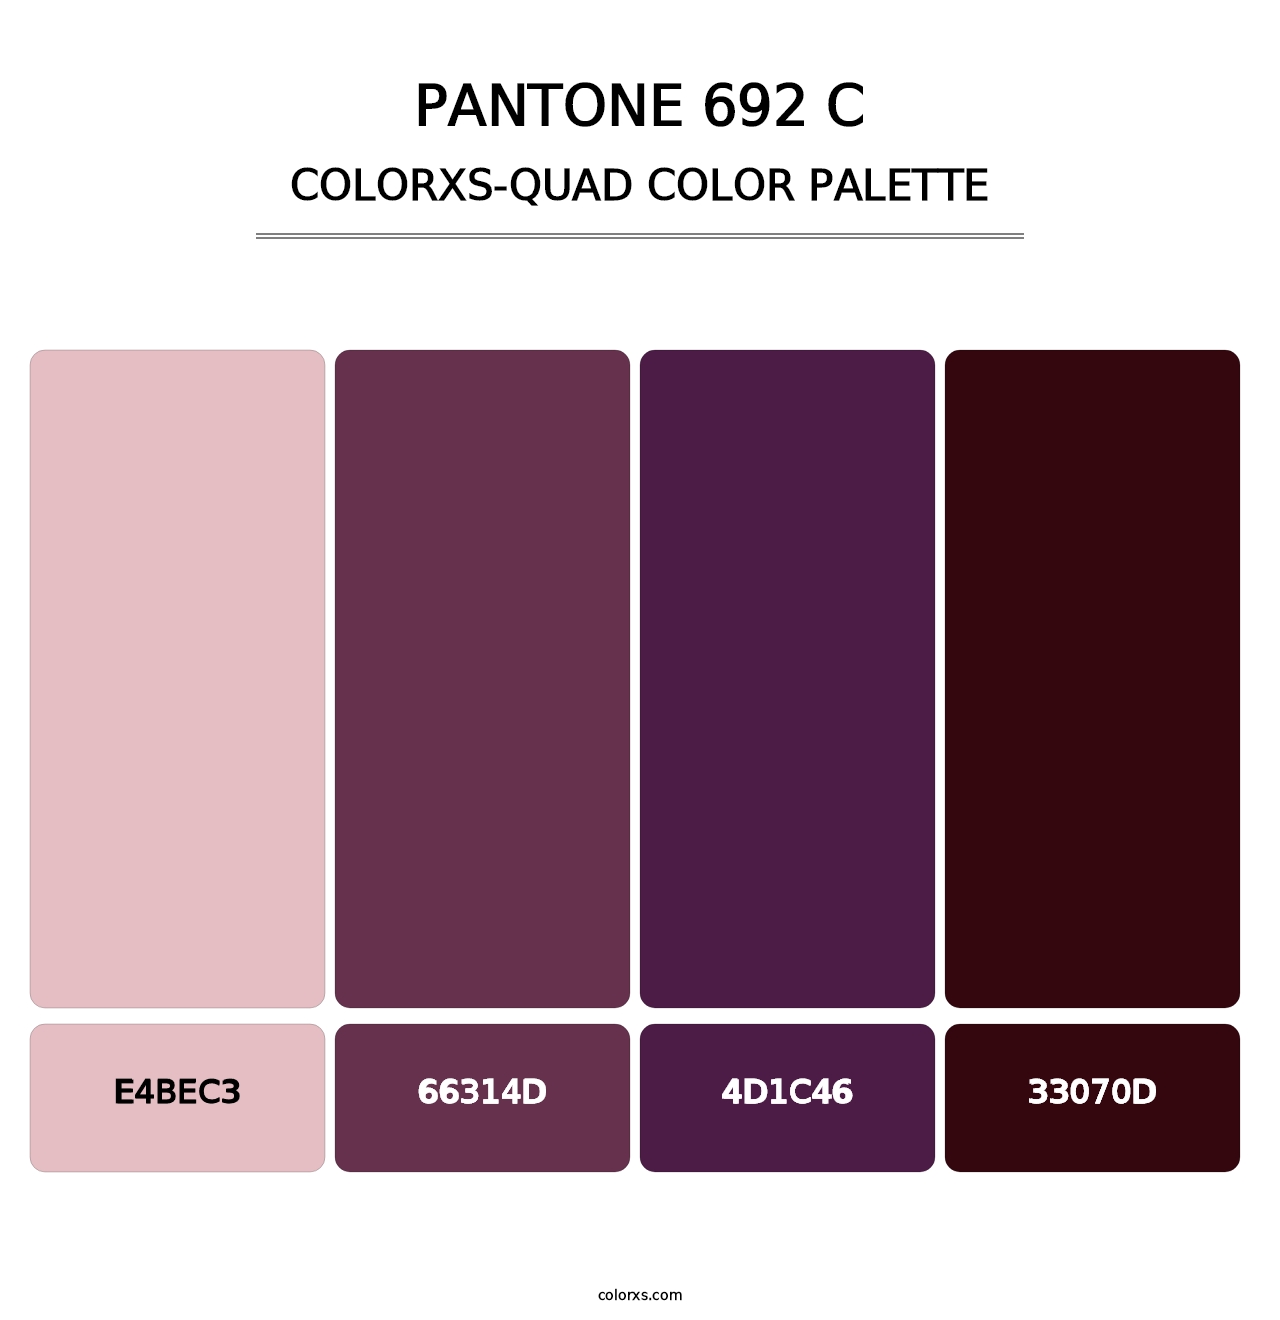 PANTONE 692 C - Colorxs Quad Palette